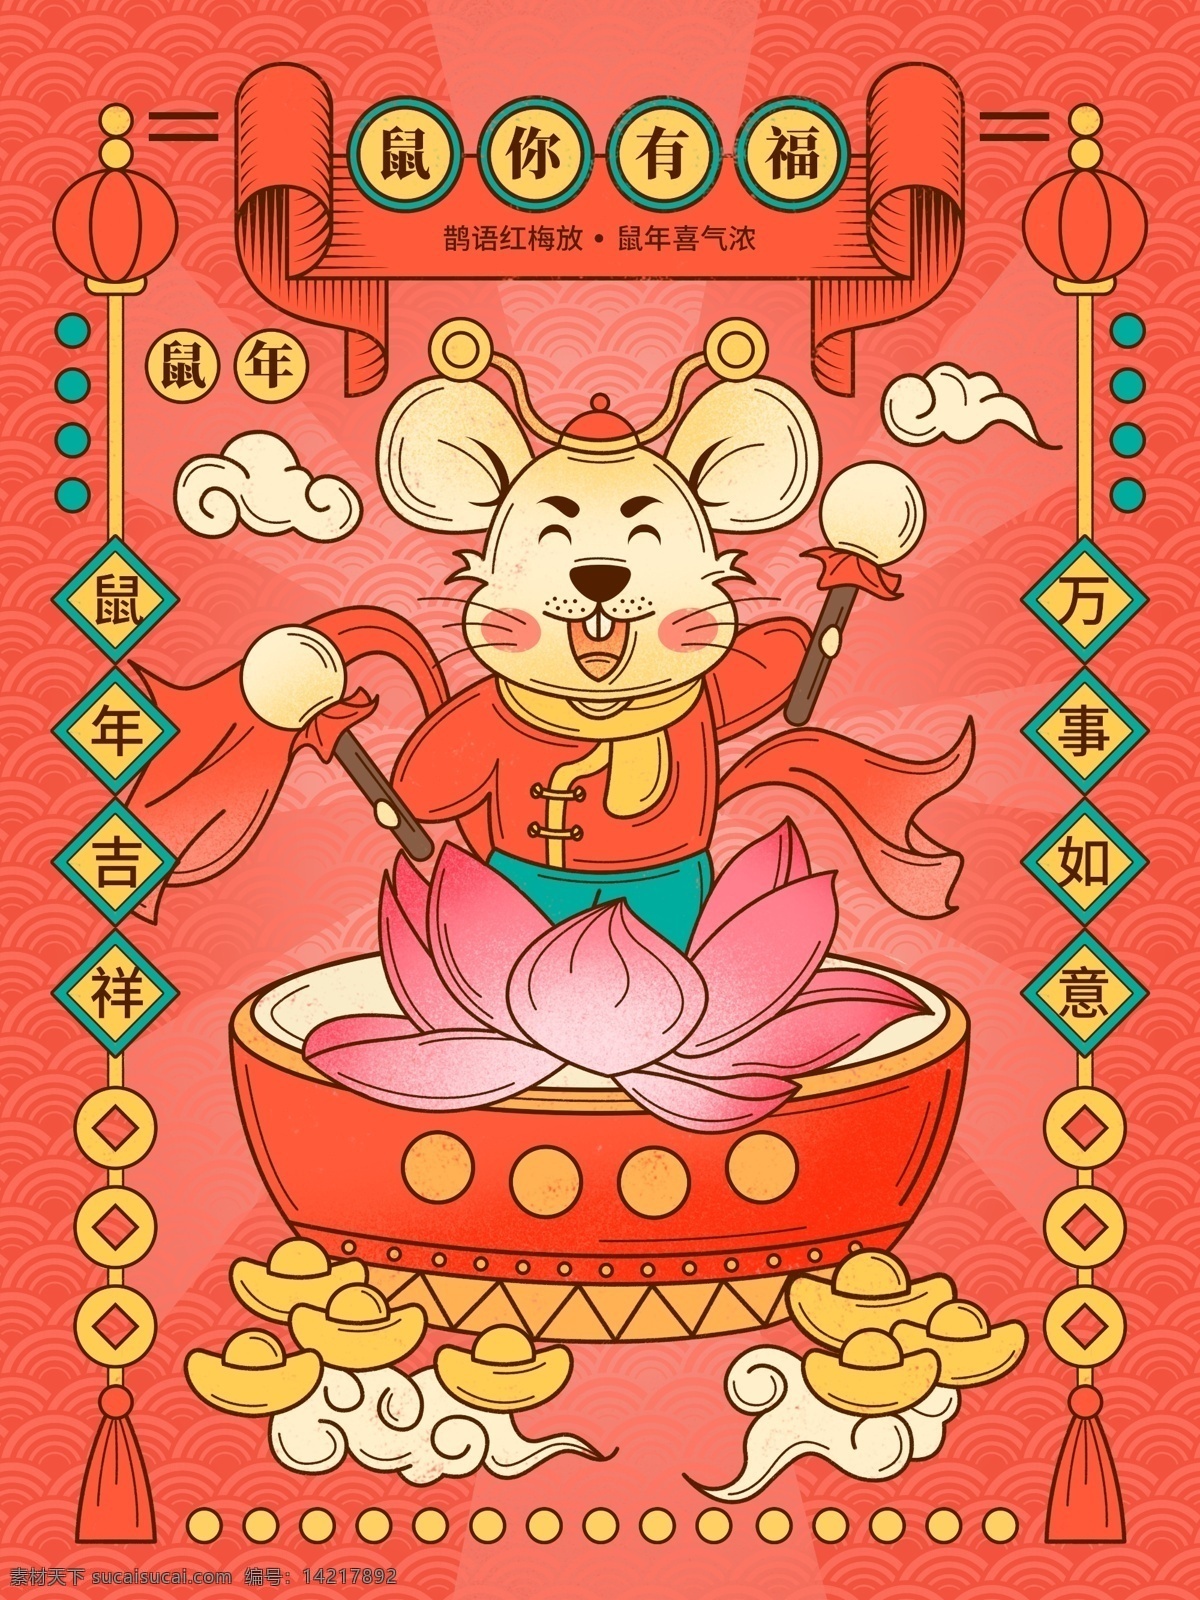 鼠年 2020 国 潮 中国 风 吉祥 原创 插画 海报 新年 过年 春节 喜庆 国潮 中国风 红色 老鼠 荷花 打鼓 祥云 元宝 手绘 商业海报